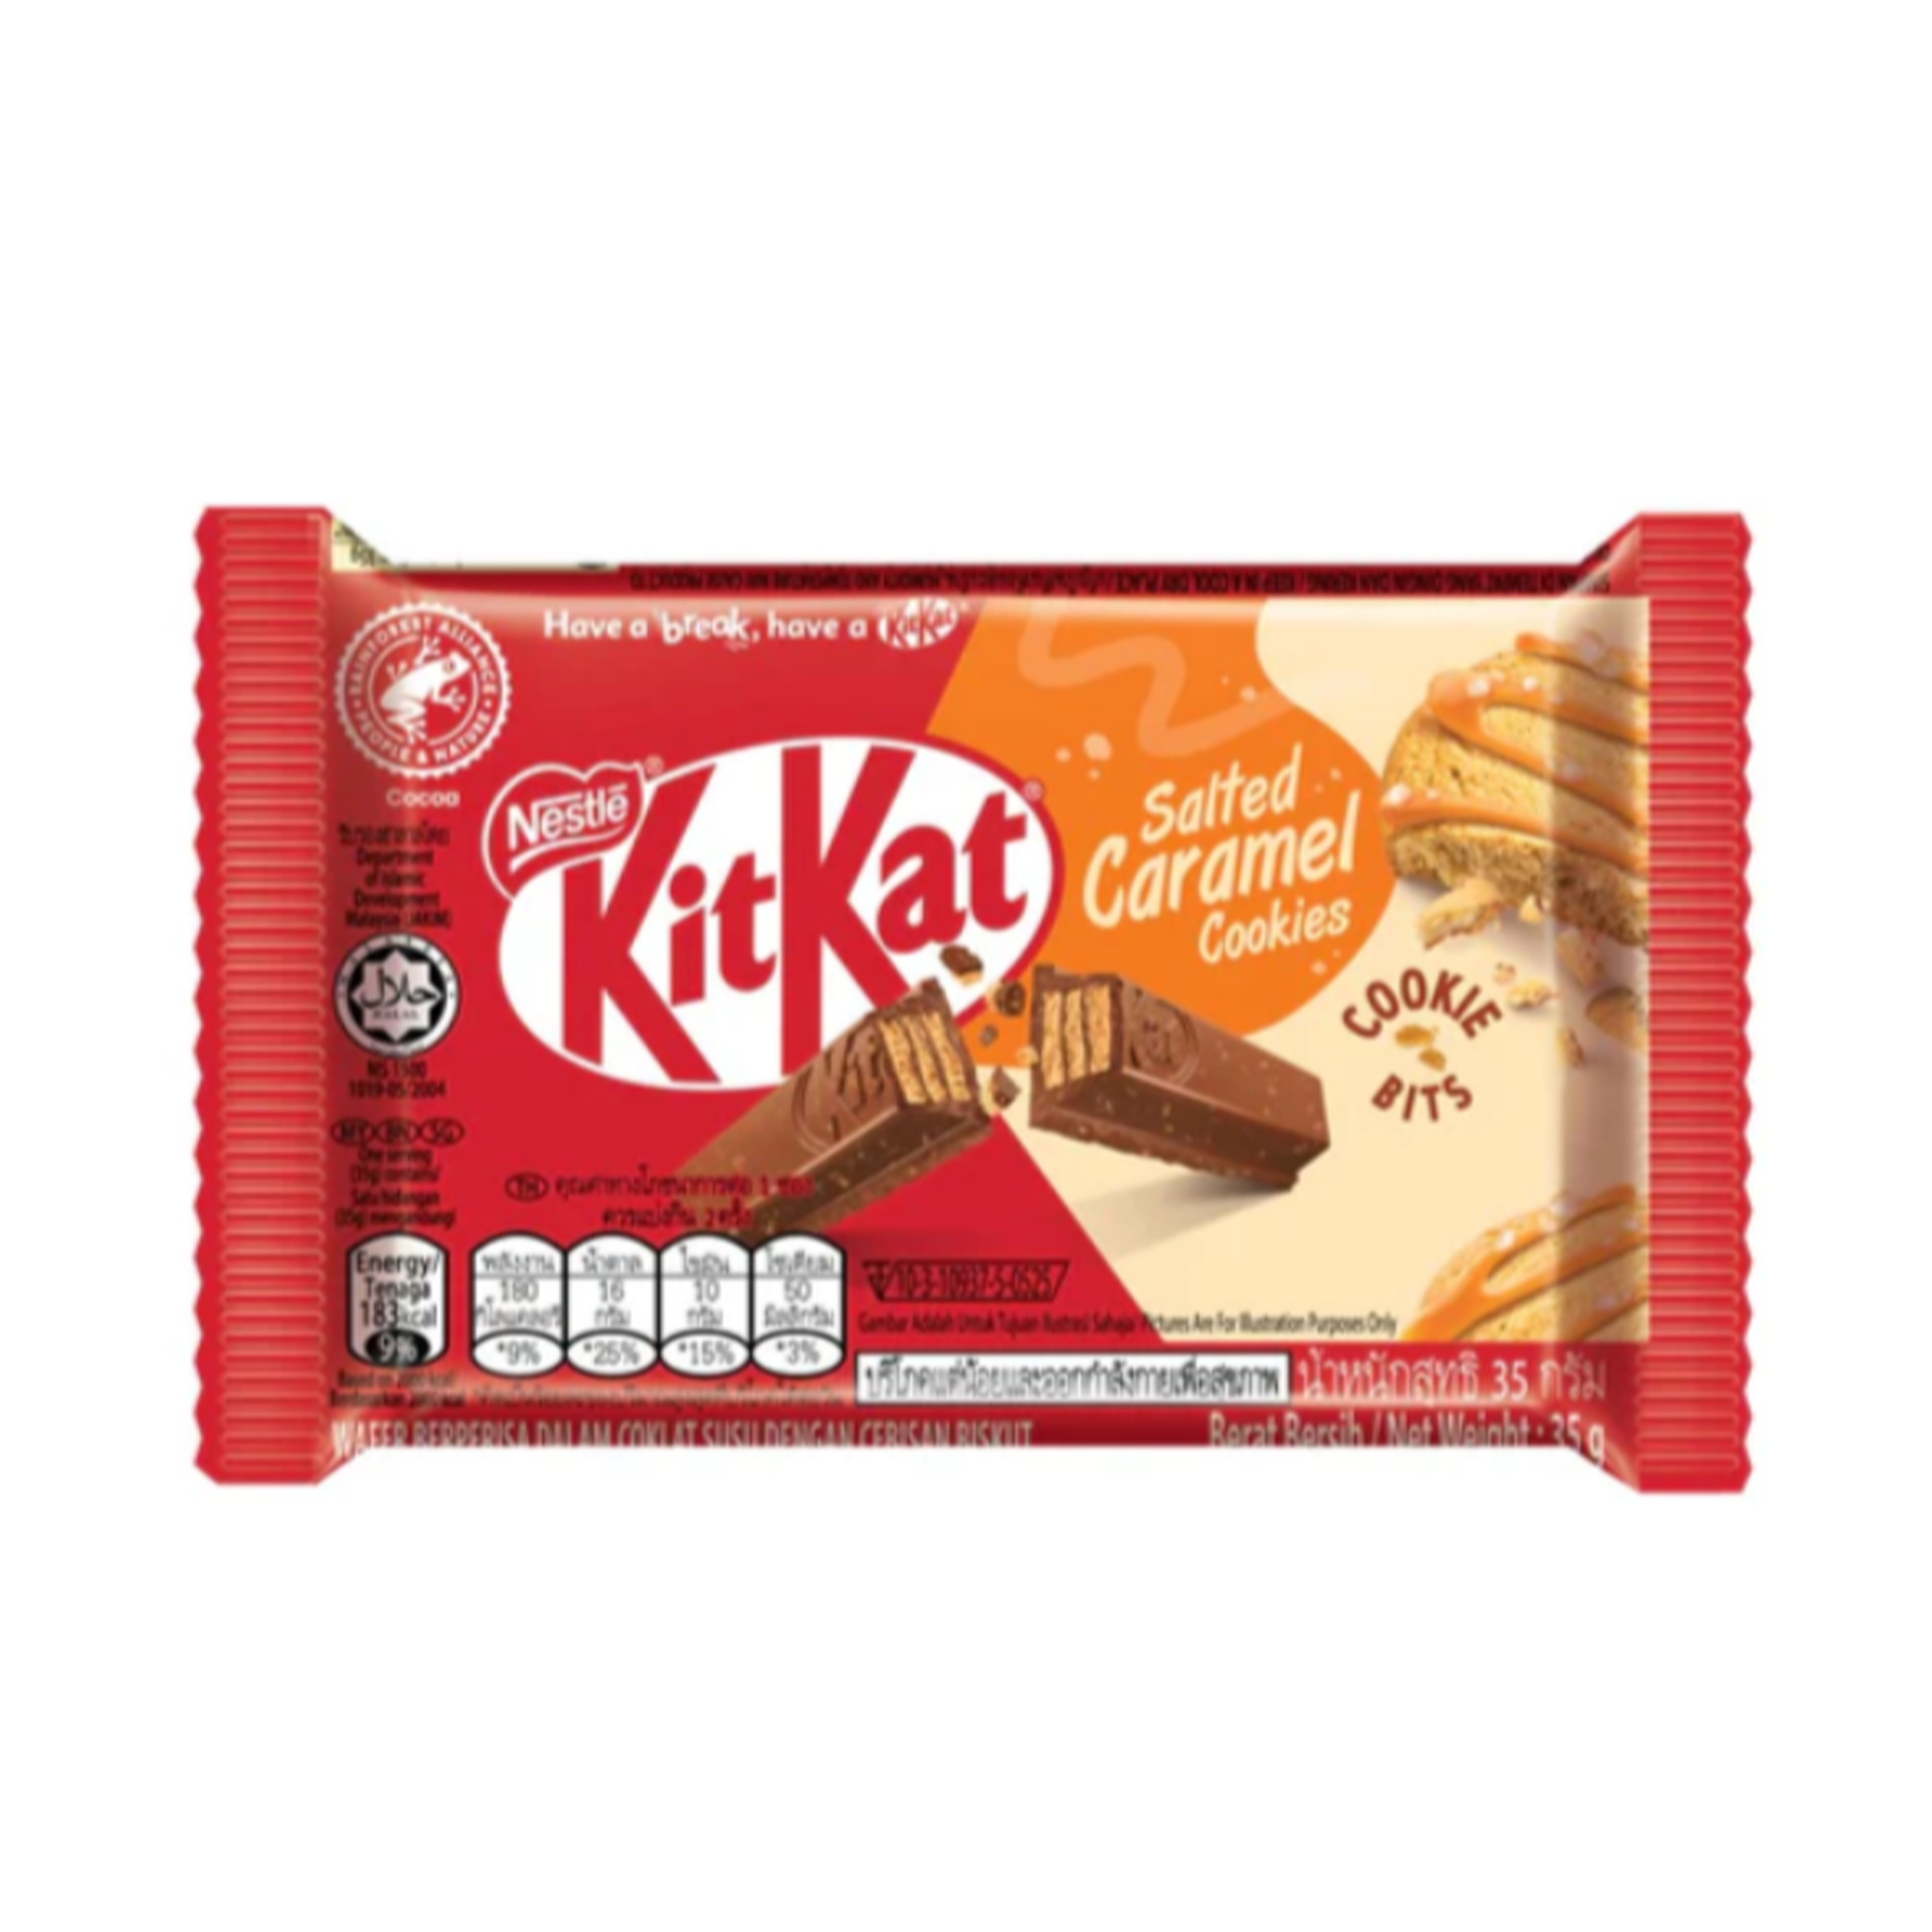 KitKat - Salted Caramel Cookies (Asia)